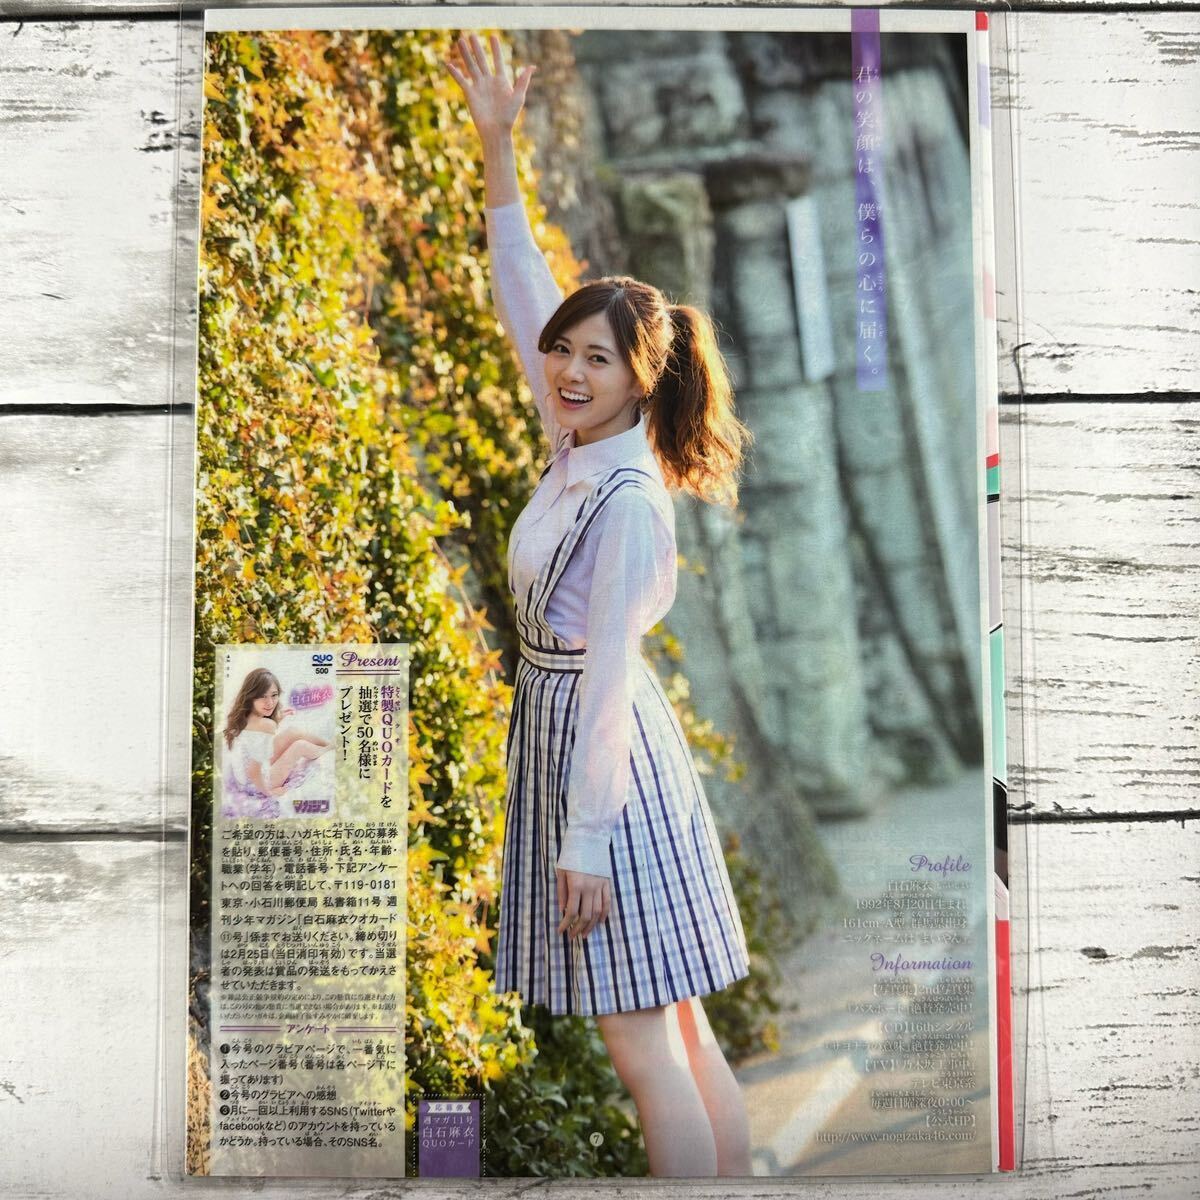 [ высокое качество ламинирование отделка ][ белый камень лен . Nogizaka 46 ] Shonen Magazine 2017 год 11 номер журнал вырезки 5P B5 плёнка купальный костюм bikini model актер женщина super 